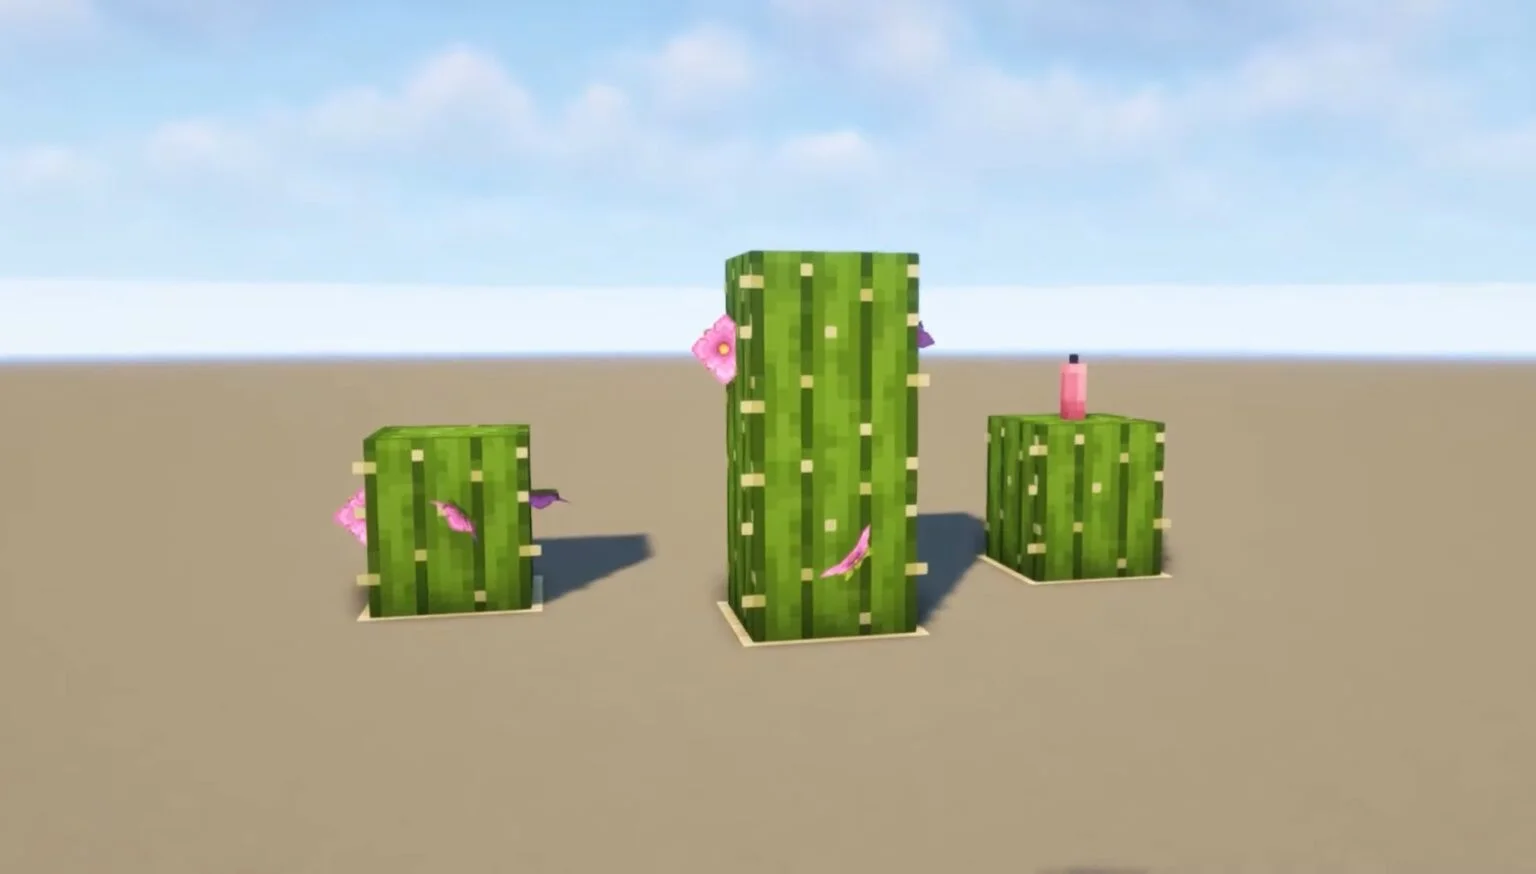 Flower cactus e1642697508847 1536x874.jpg